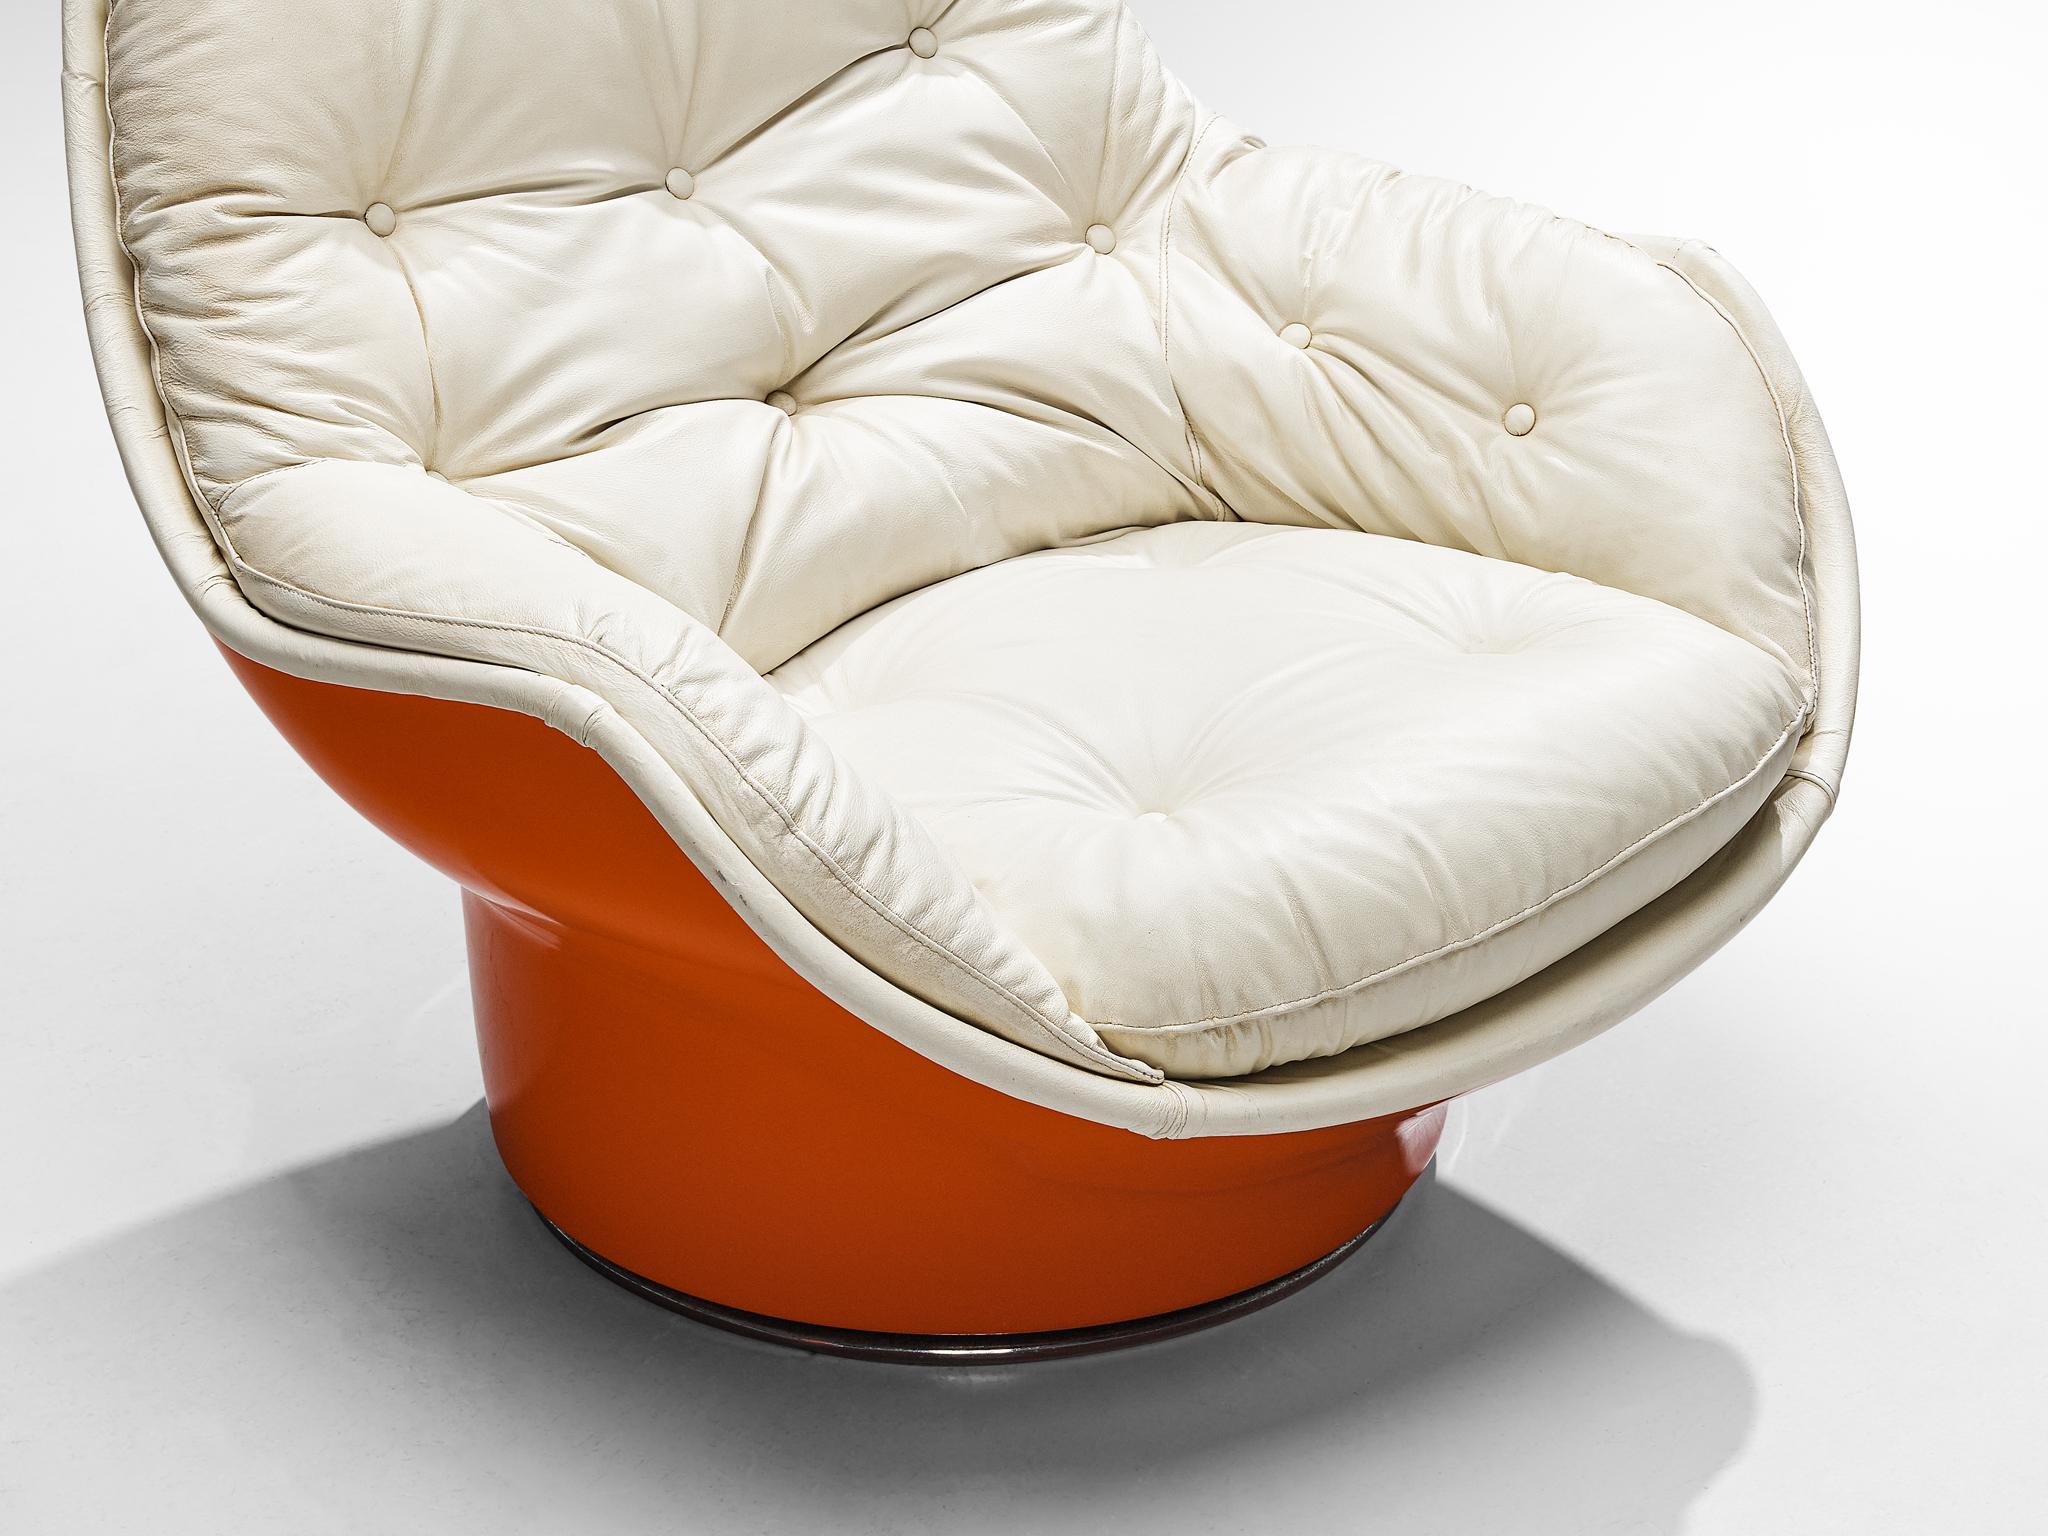 Fin du 20e siècle Chaise longue Yoga en fibre de verre orange de Michel Cadestin pour Airborne  en vente